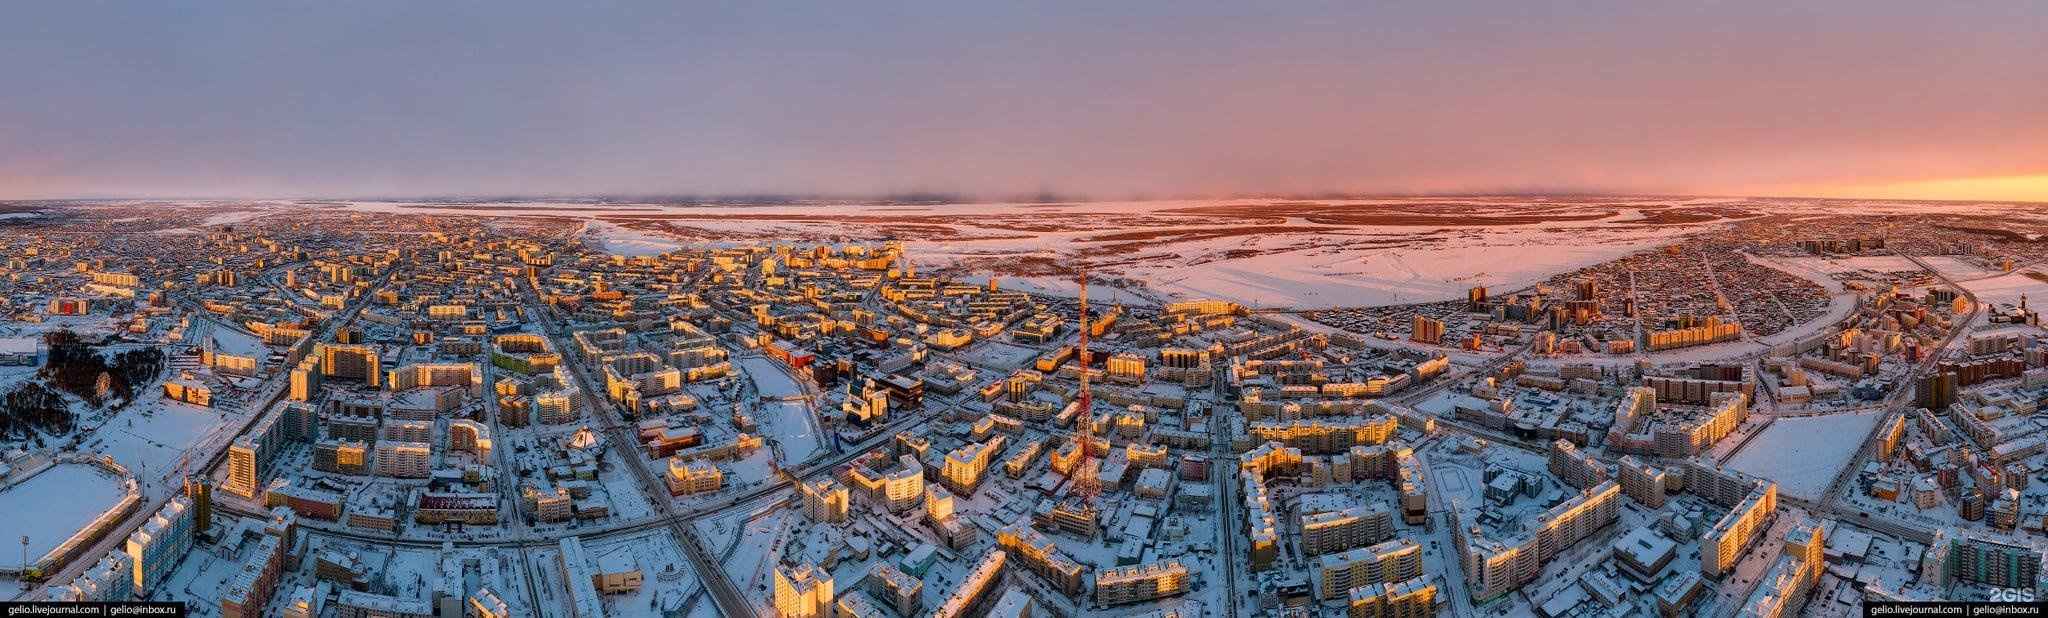 Якутск панорама города